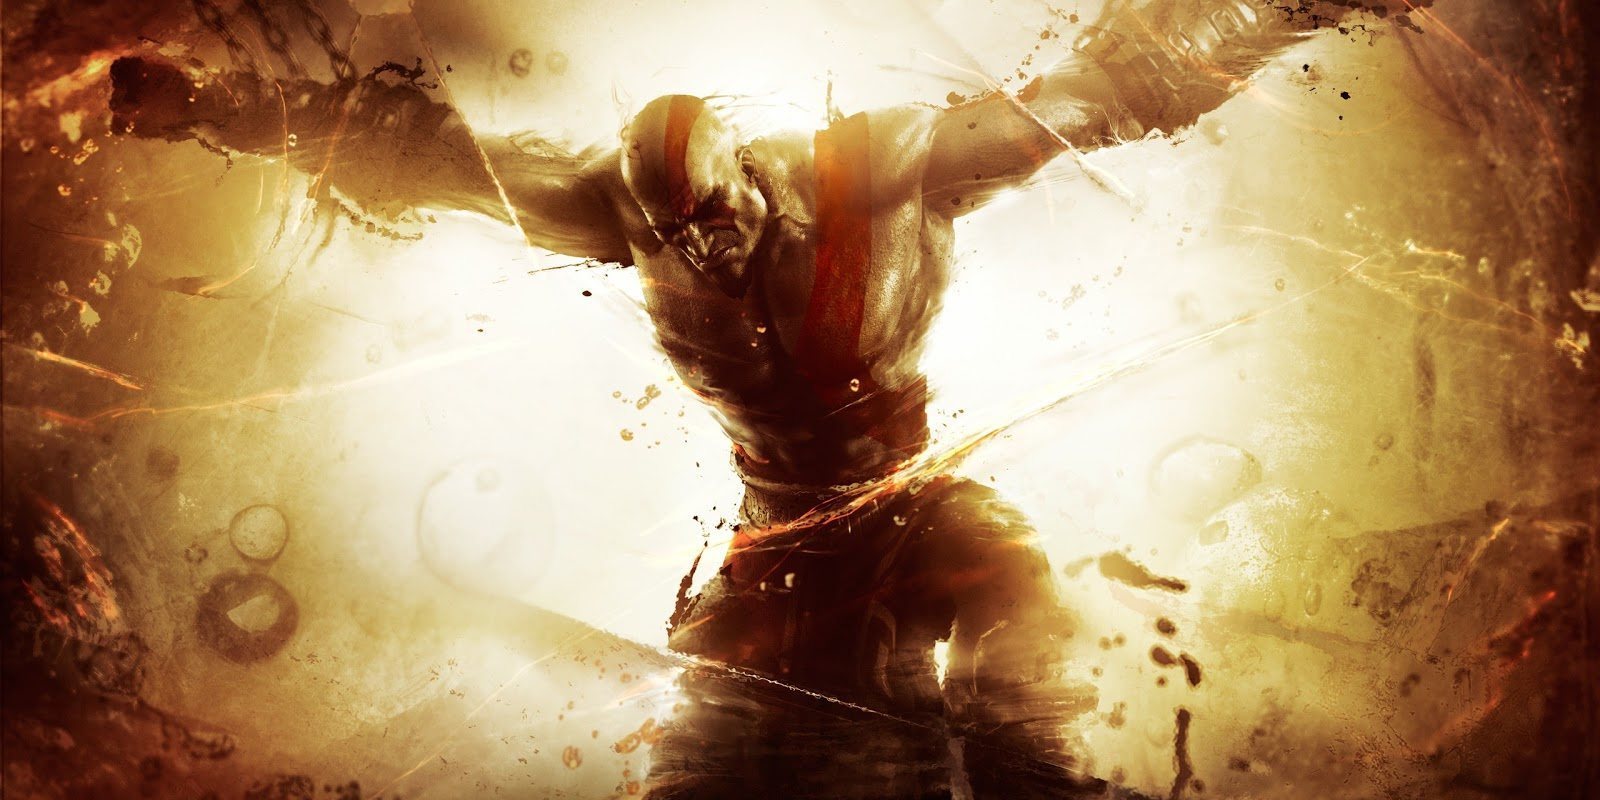 Sony Santa Monica quiso cambiar el rumbo tras 'God of War: Ascension'